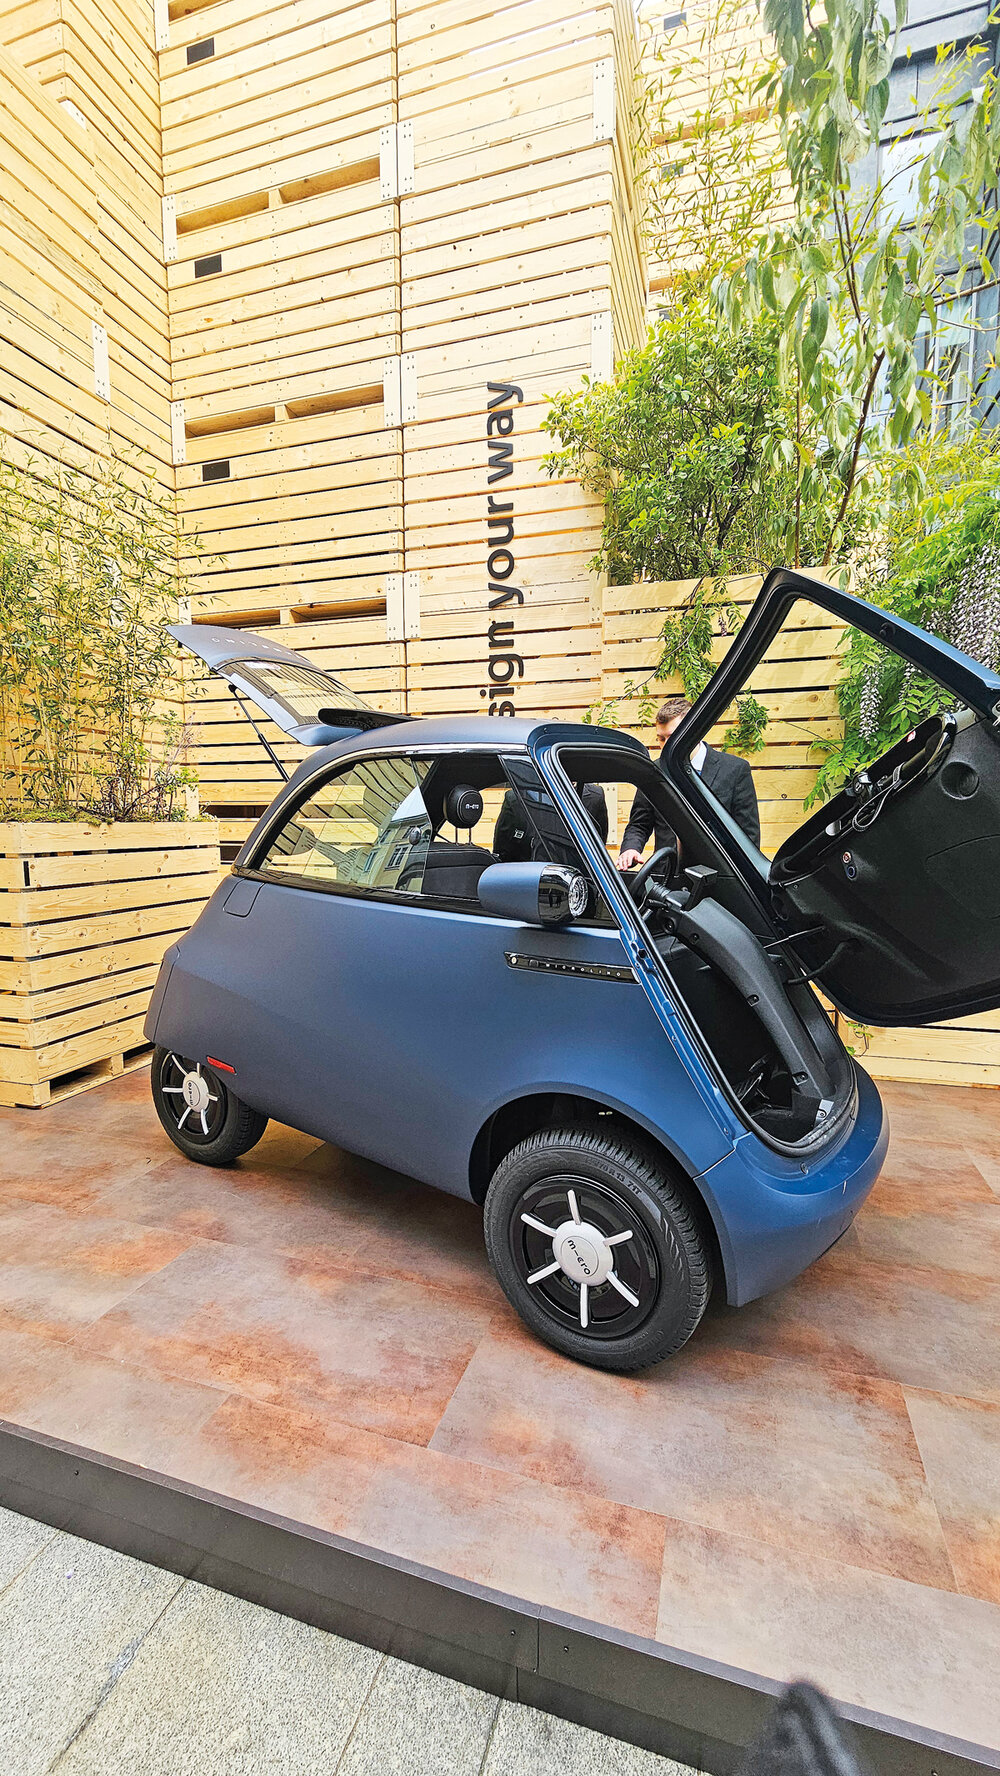 MCA-Mario Cucinella Architects en la sede del  diario Corriere della Sera mostró el Microlino, la evolución del Isetta, 100% eléctrico, el microauto del momento para moverse por la ciudad en formato sintético y sustentable.